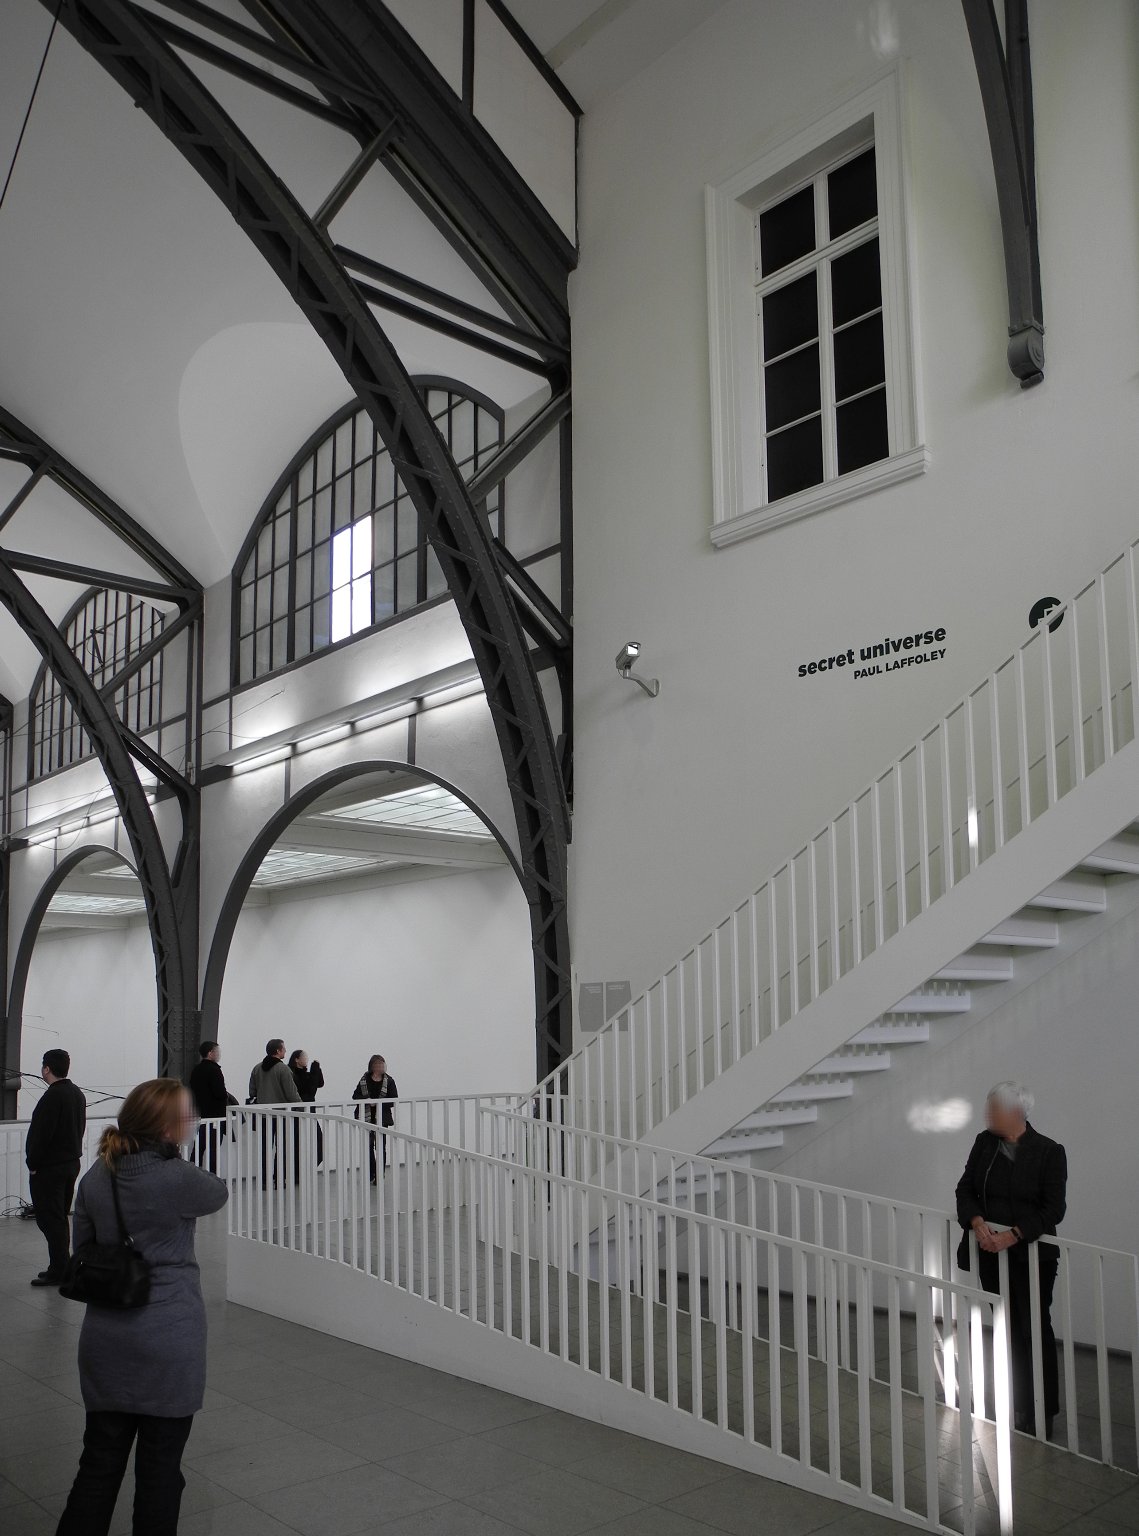 Museum für Gegenwart - Hamburger Bahnhof